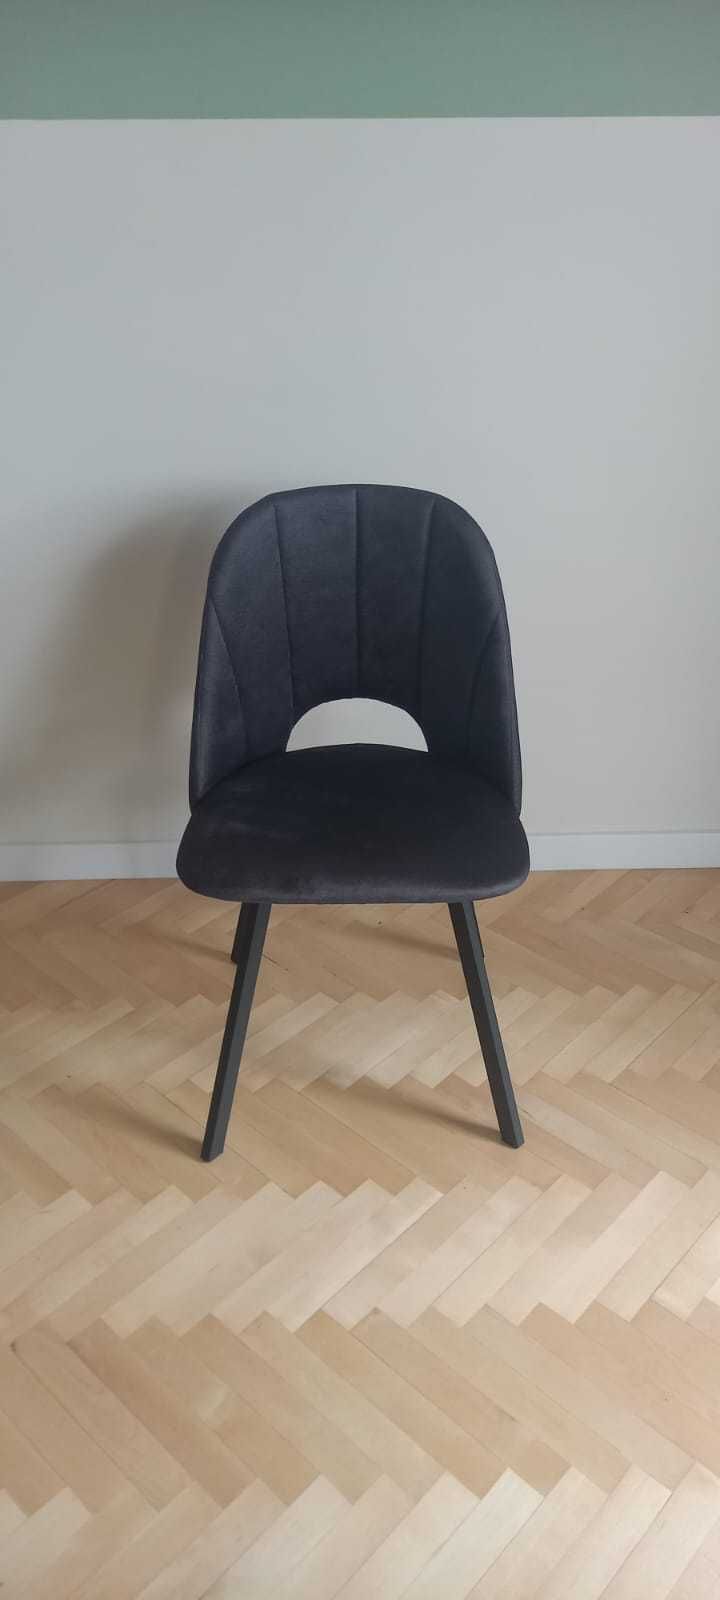 NOWE krzesło, krzesła welurowe na metalowych nogach - 6 sztuk